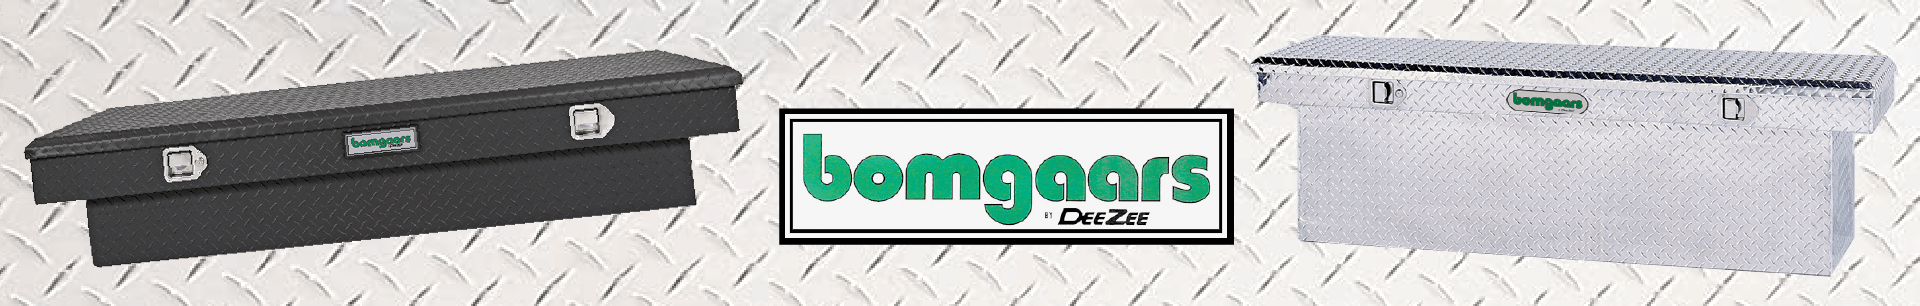 Bomgaars By DeeZee